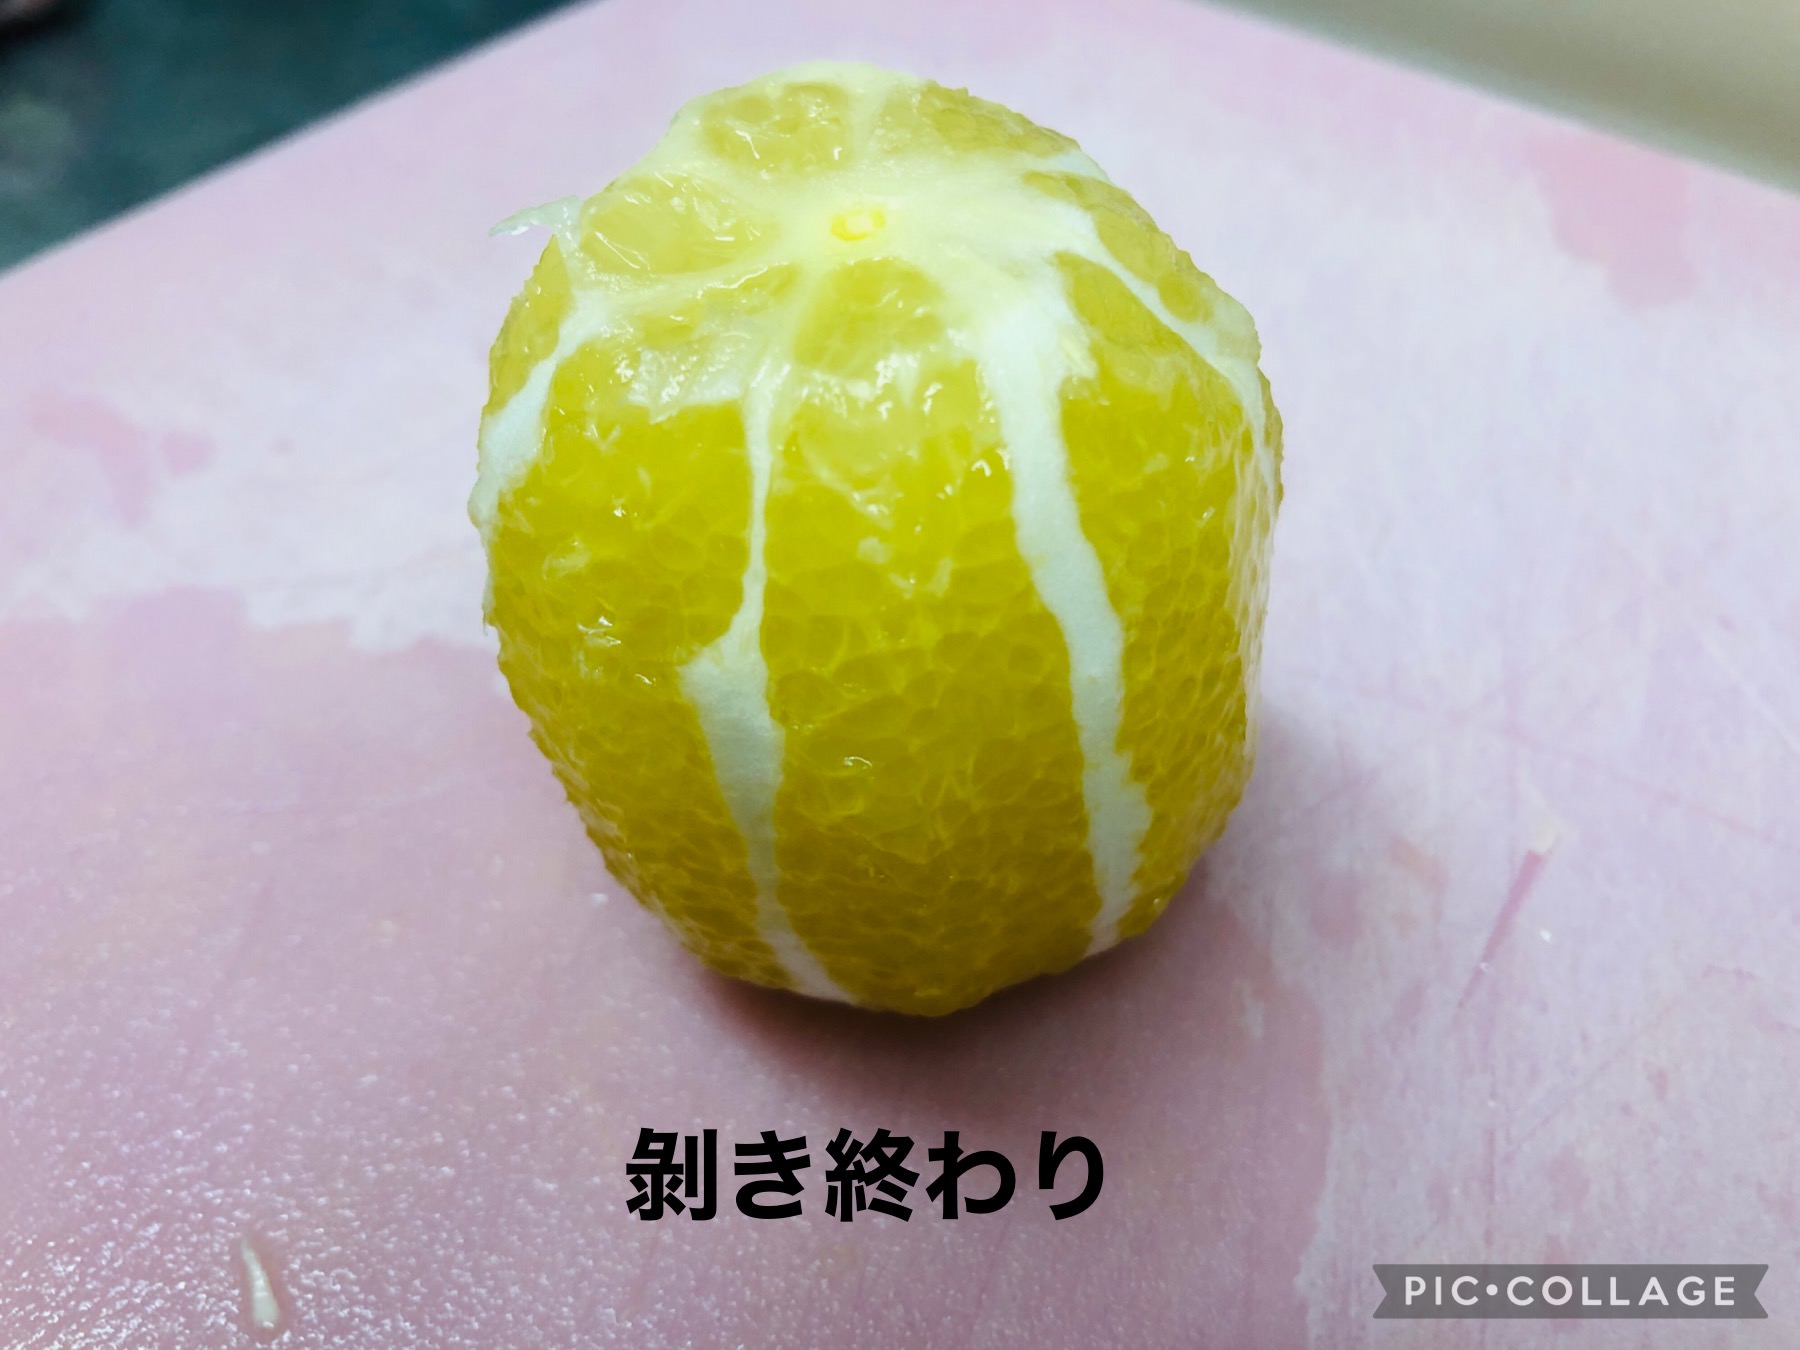 レモンが果肉だけの状態になった画像です